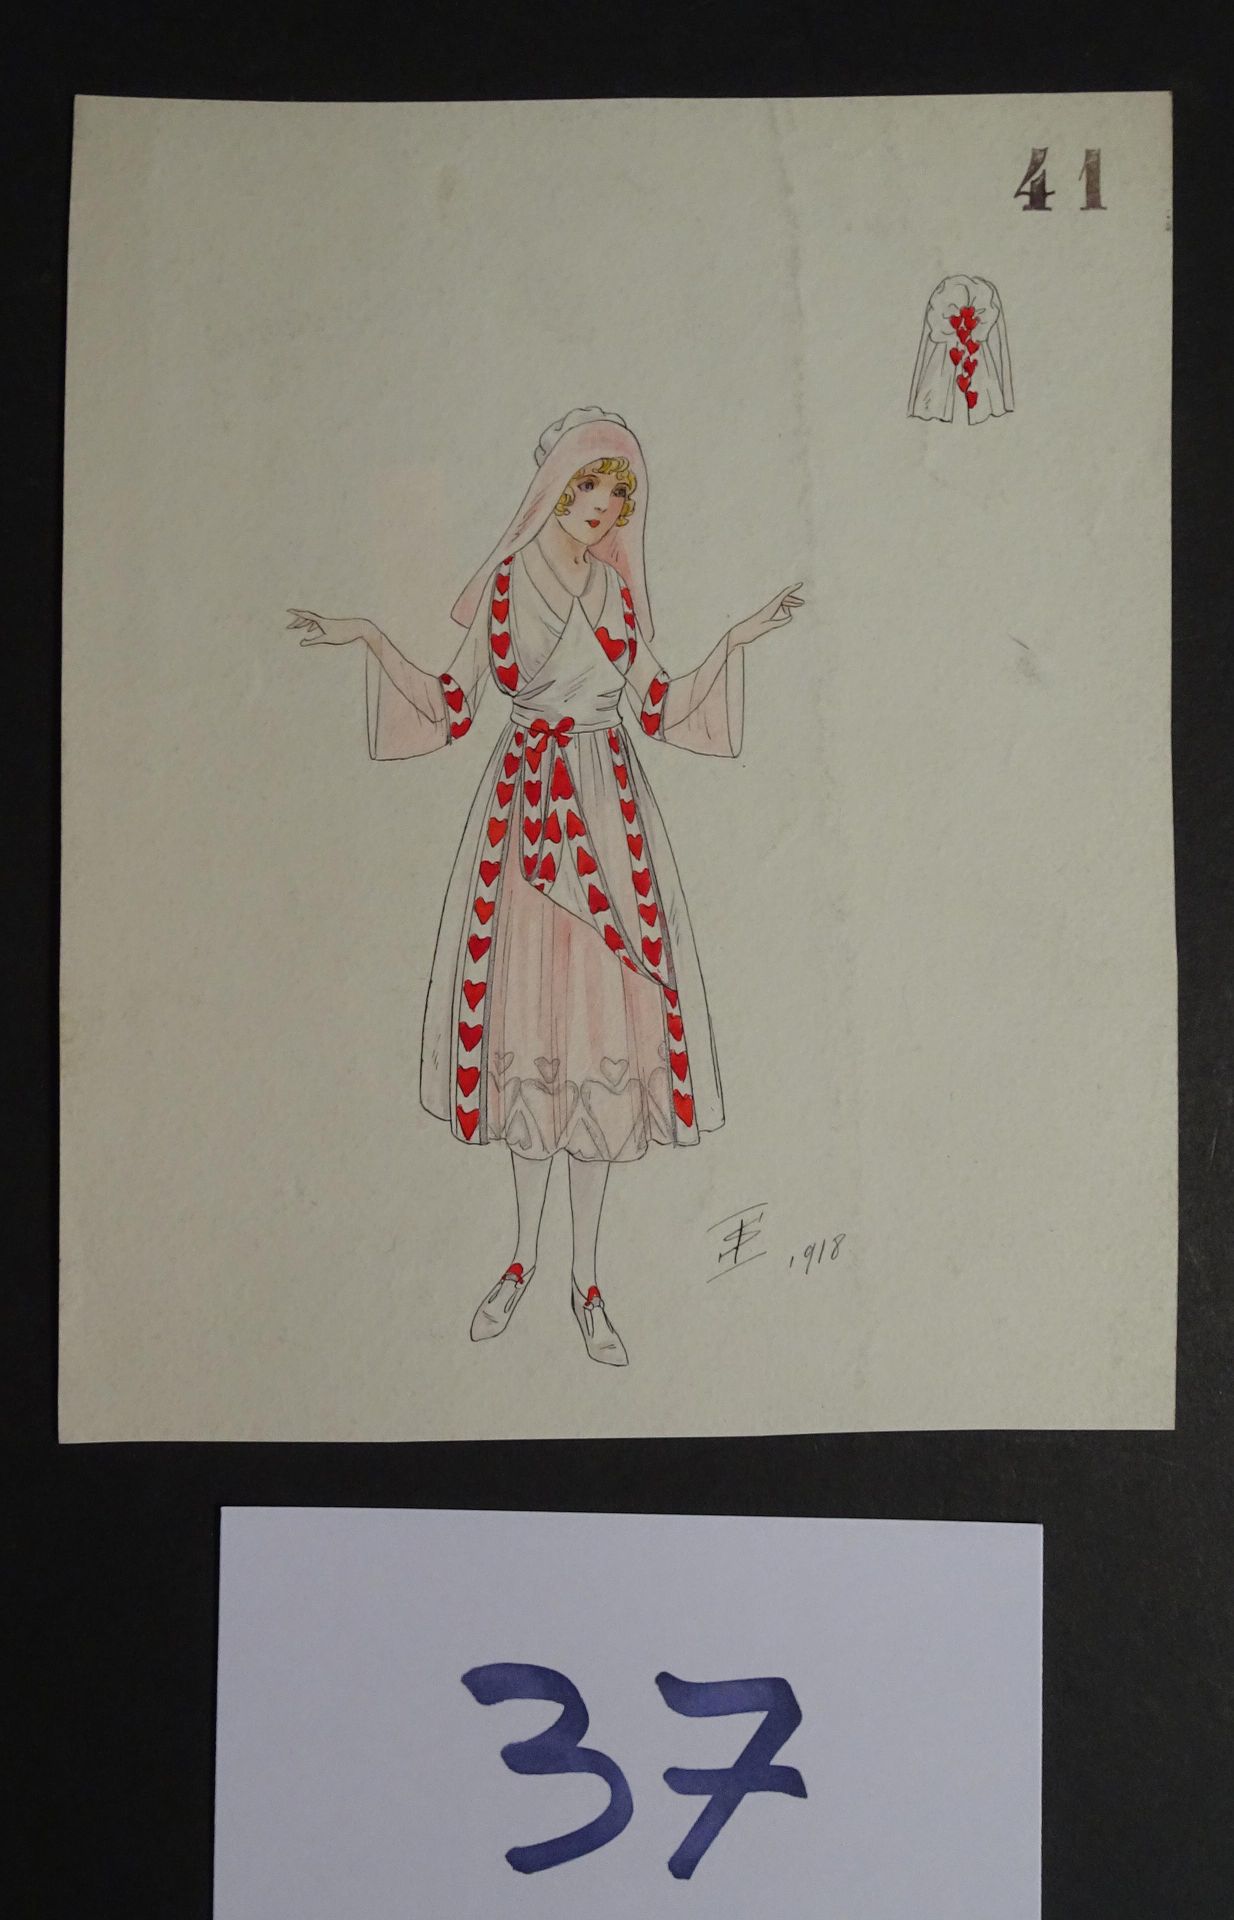 SOKOLOFF SOKOLOFF IGOR (principios del siglo XX) 

"Mujer con vestido de corazón&hellip;